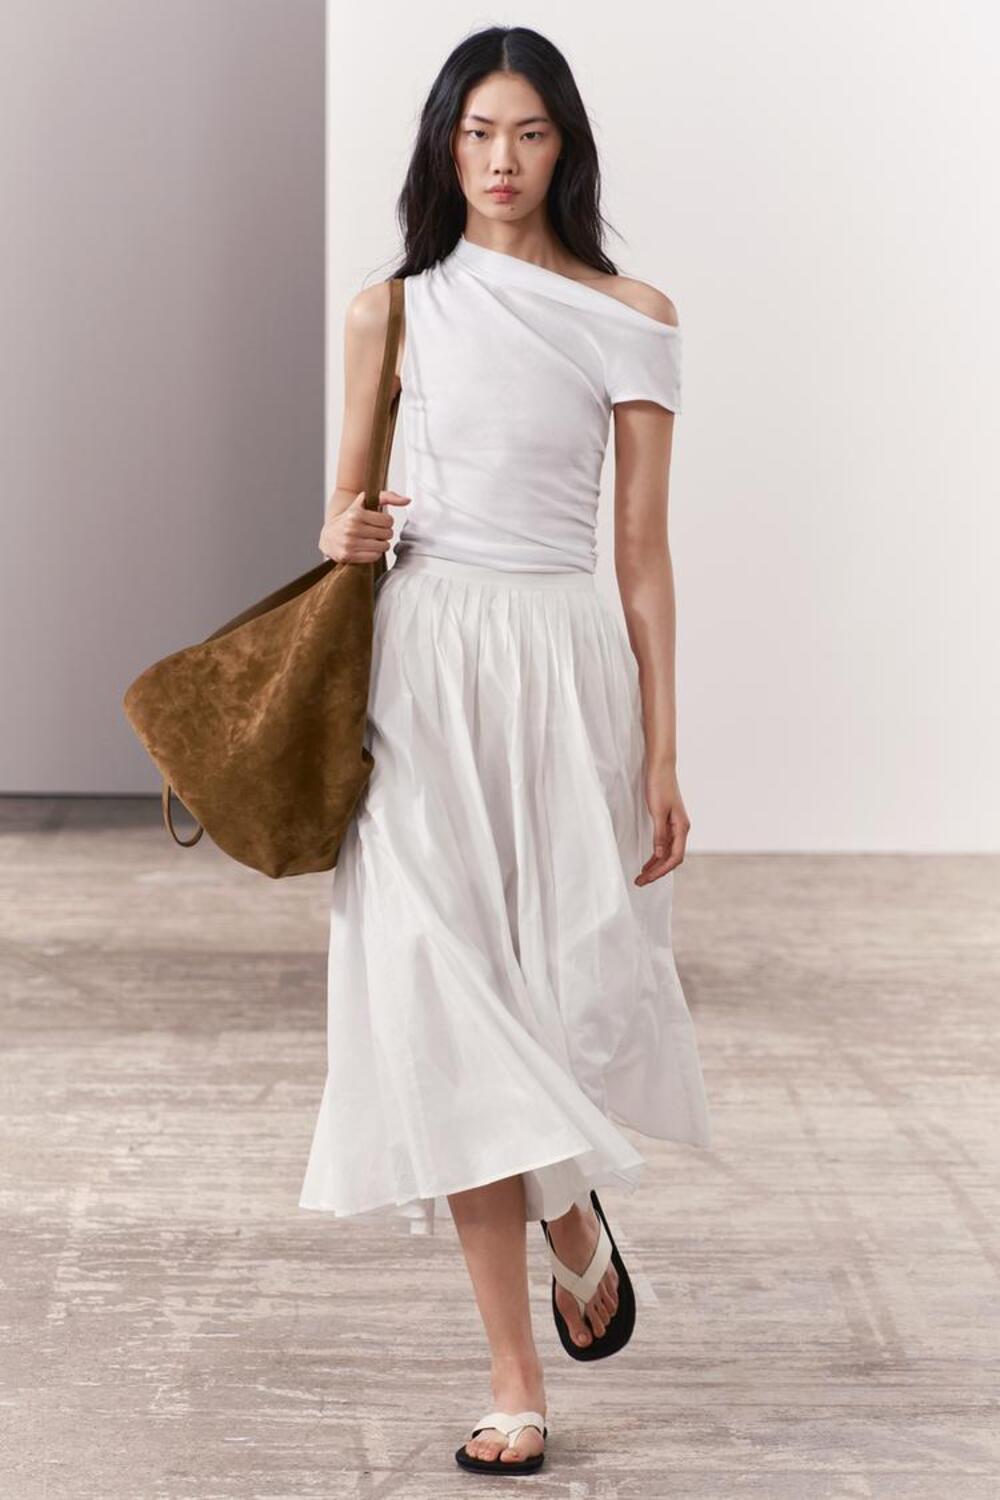 suknja 1 Bele suknje: WNB stilisti izdvajaju najlepše modele sa domaćeg tržišta